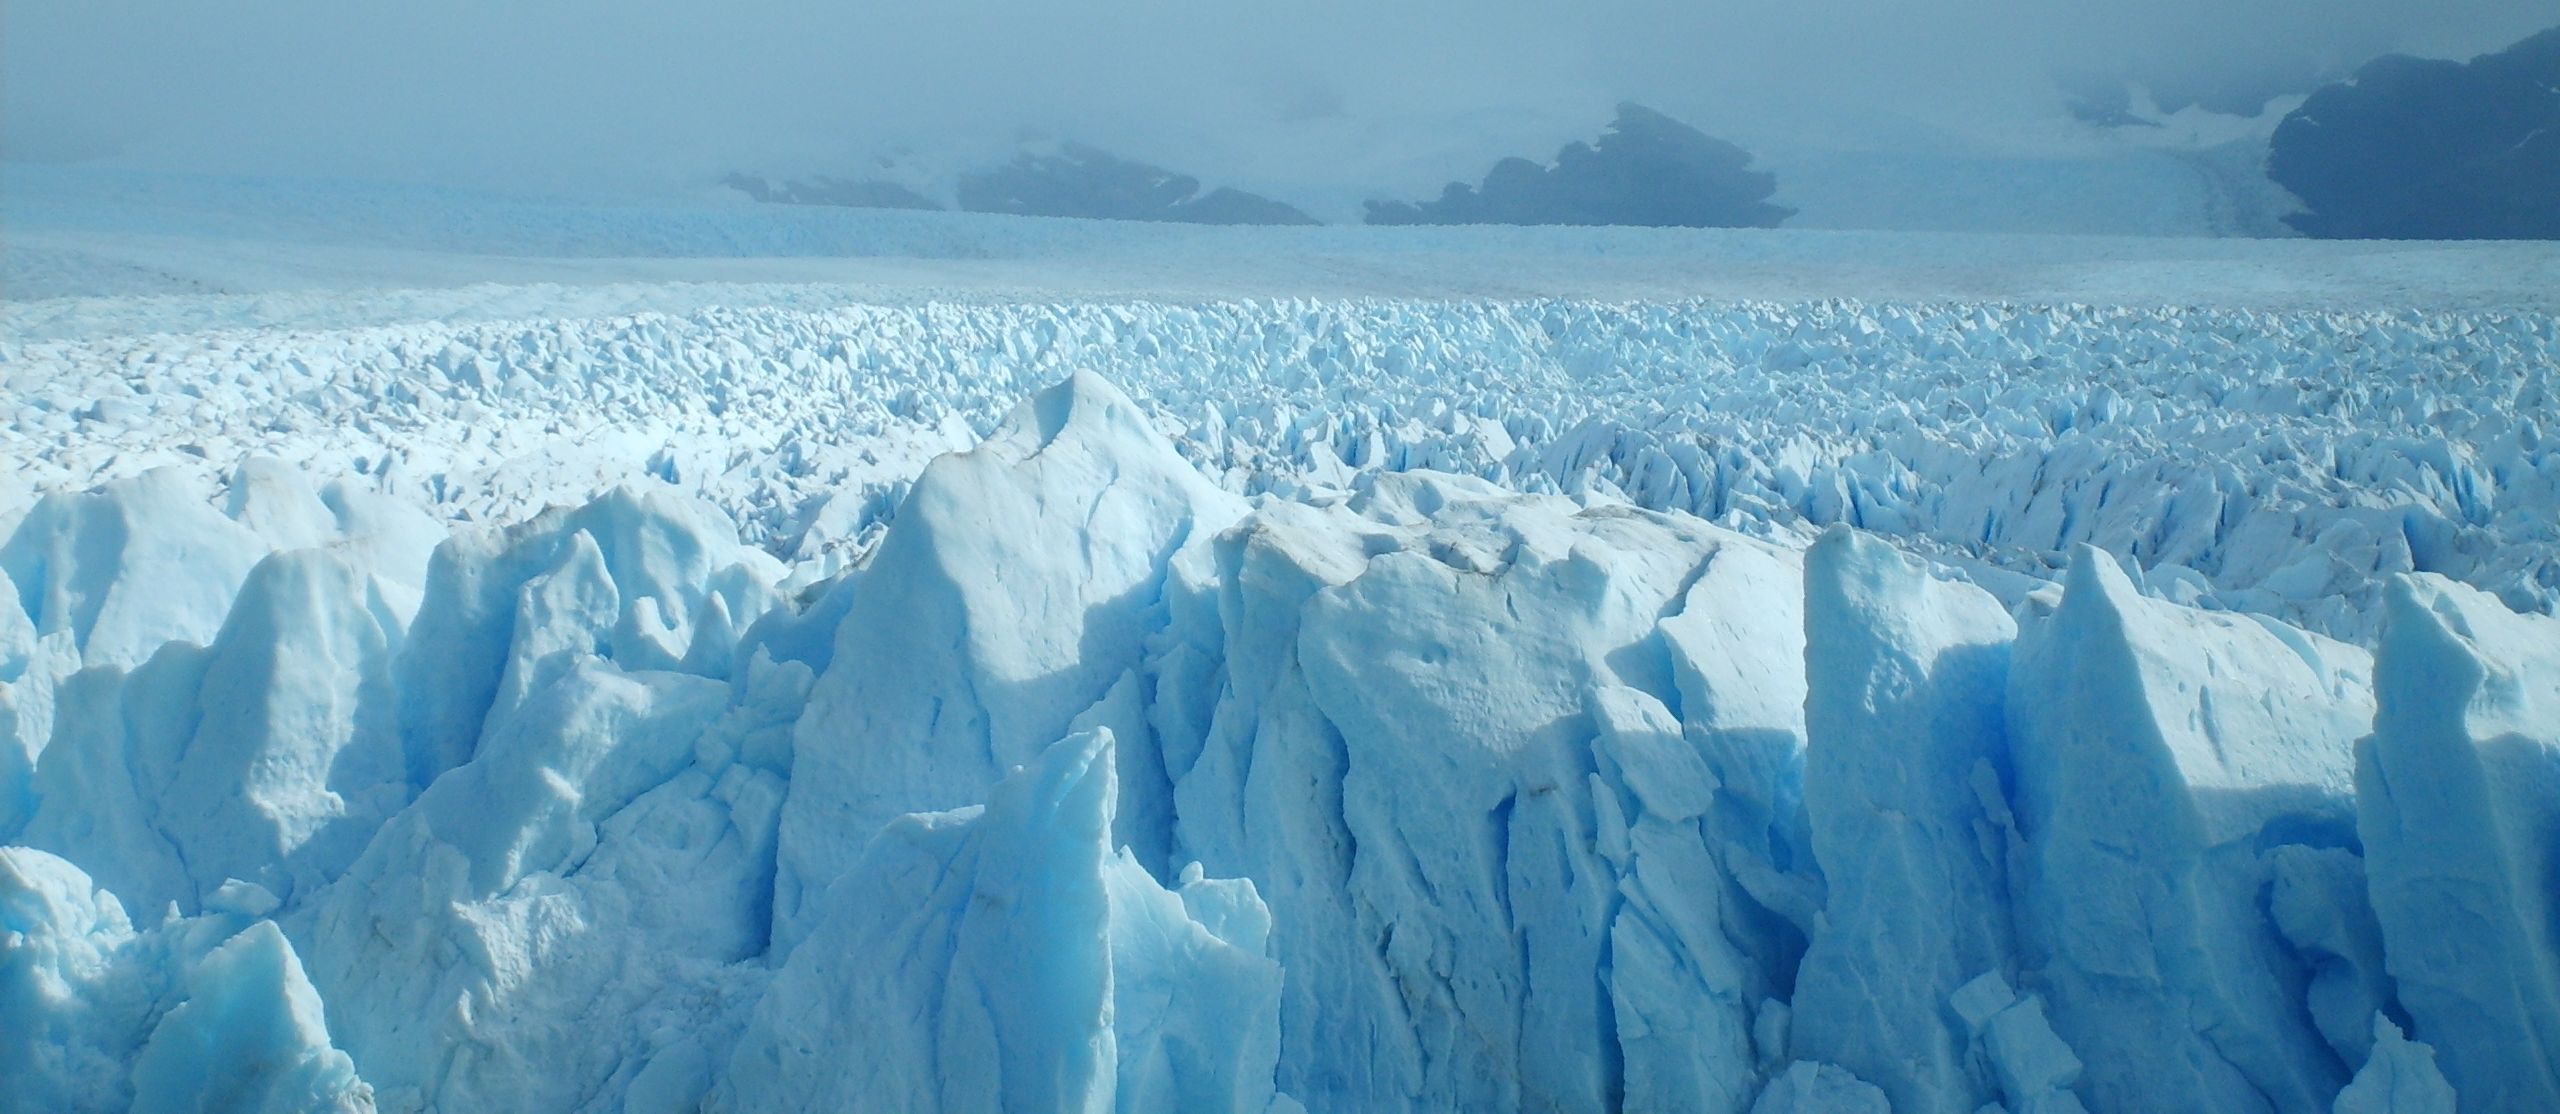 Glaciar Perito Moreno By Leonardo Perez Fiorentino Desktop Wallpaper